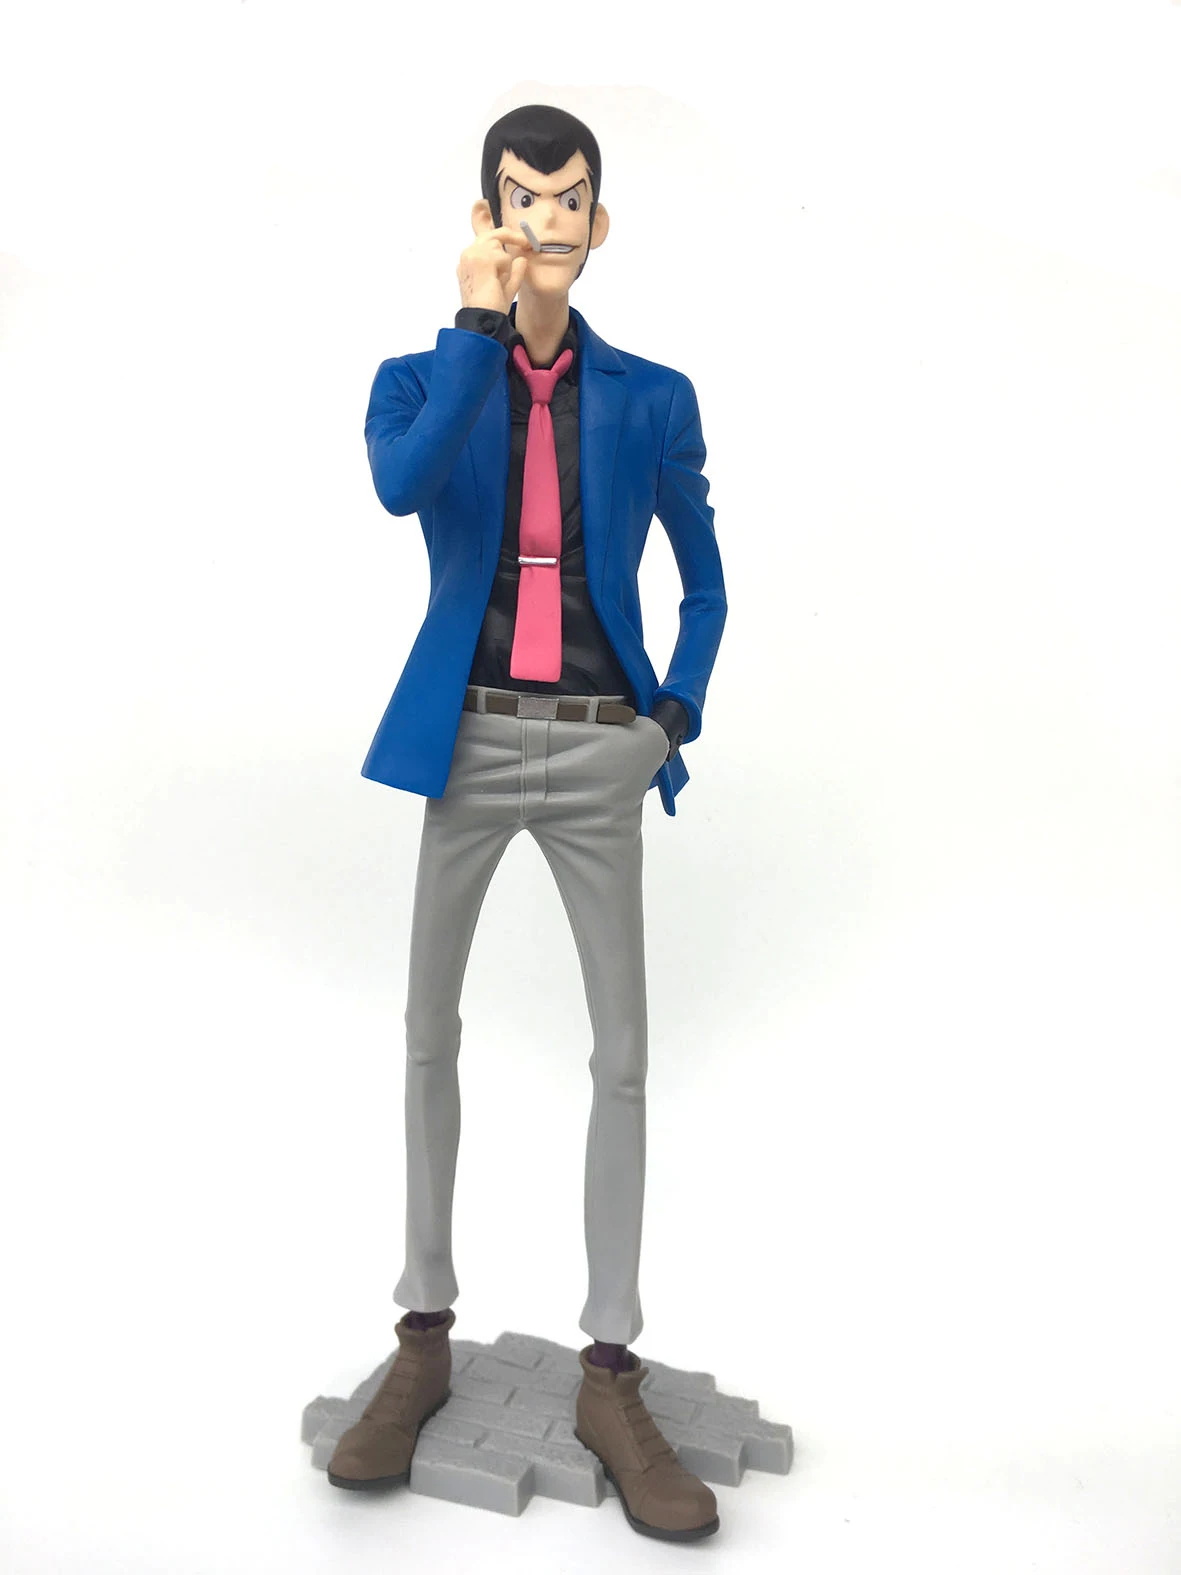 25 см японская Оригинальная фигурка аниме Lupin III Rupan Sansei фигурка Коллекционная модель игрушки для мальчиков